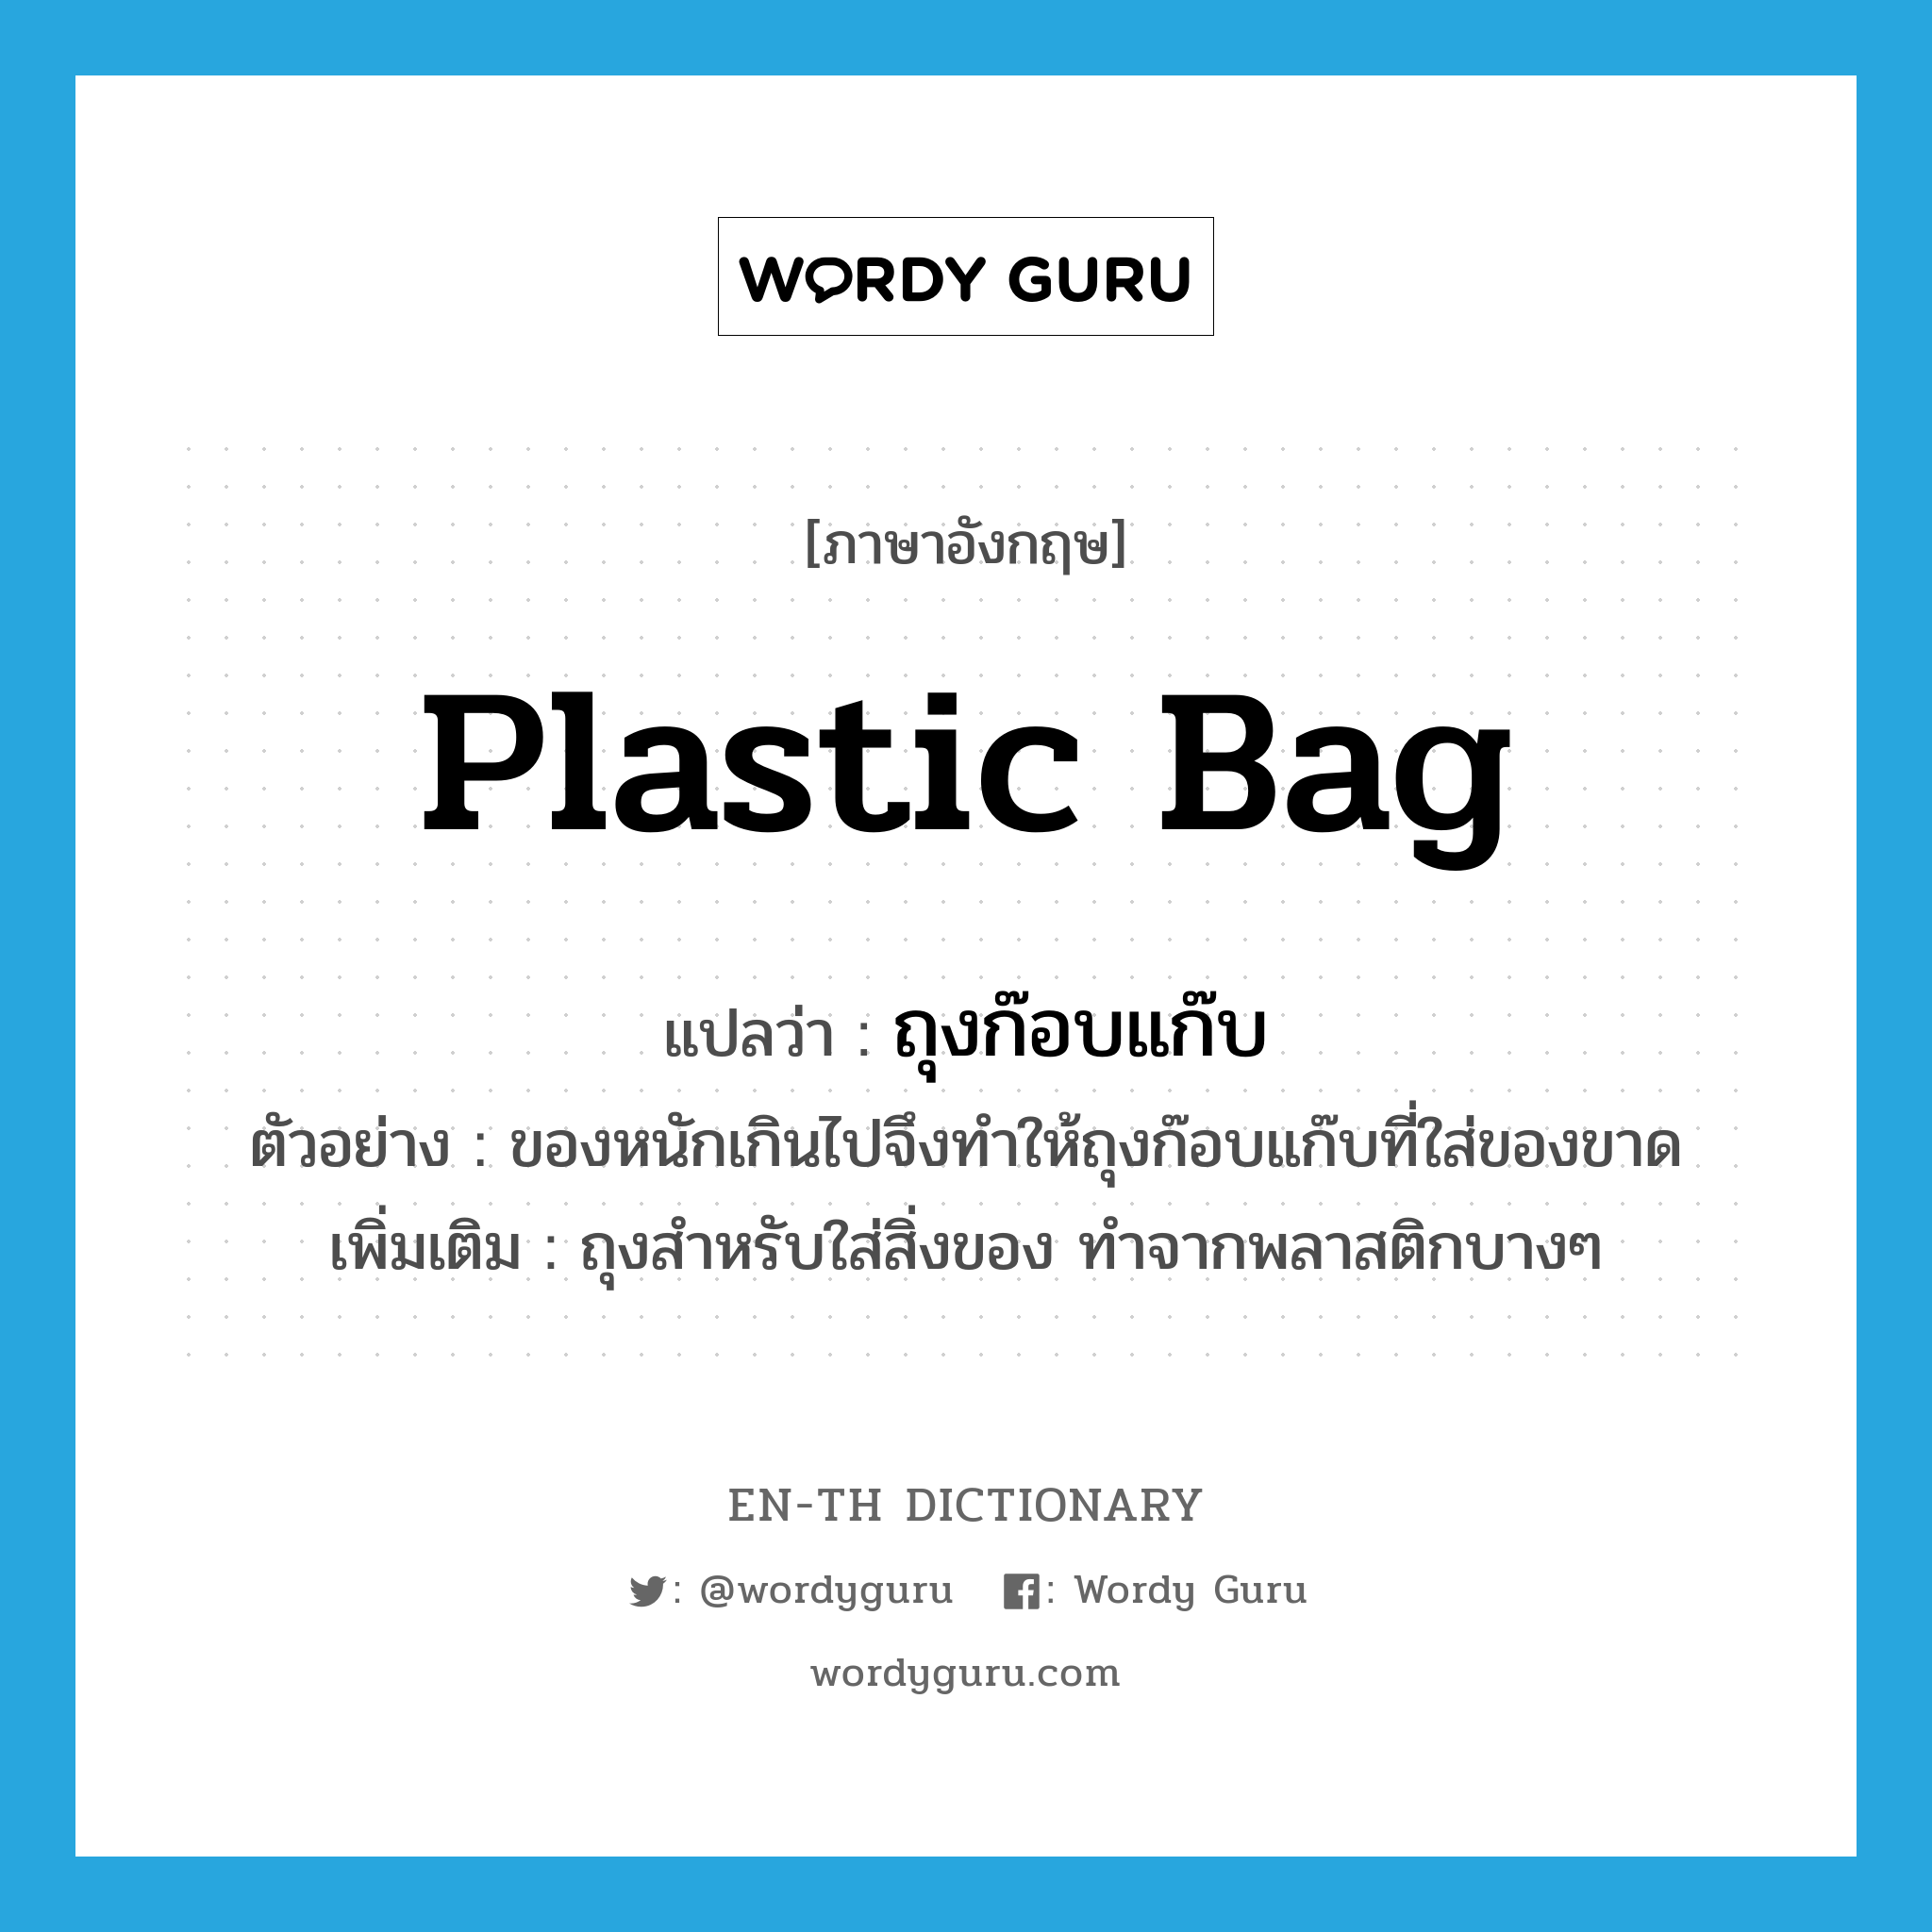 ถุงก๊อบแก๊บ ภาษาอังกฤษ?, คำศัพท์ภาษาอังกฤษ ถุงก๊อบแก๊บ แปลว่า plastic bag ประเภท N ตัวอย่าง ของหนักเกินไปจึงทำให้ถุงก๊อบแก๊บที่ใส่ของขาด เพิ่มเติม ถุงสำหรับใส่สิ่งของ ทำจากพลาสติกบางๆ หมวด N